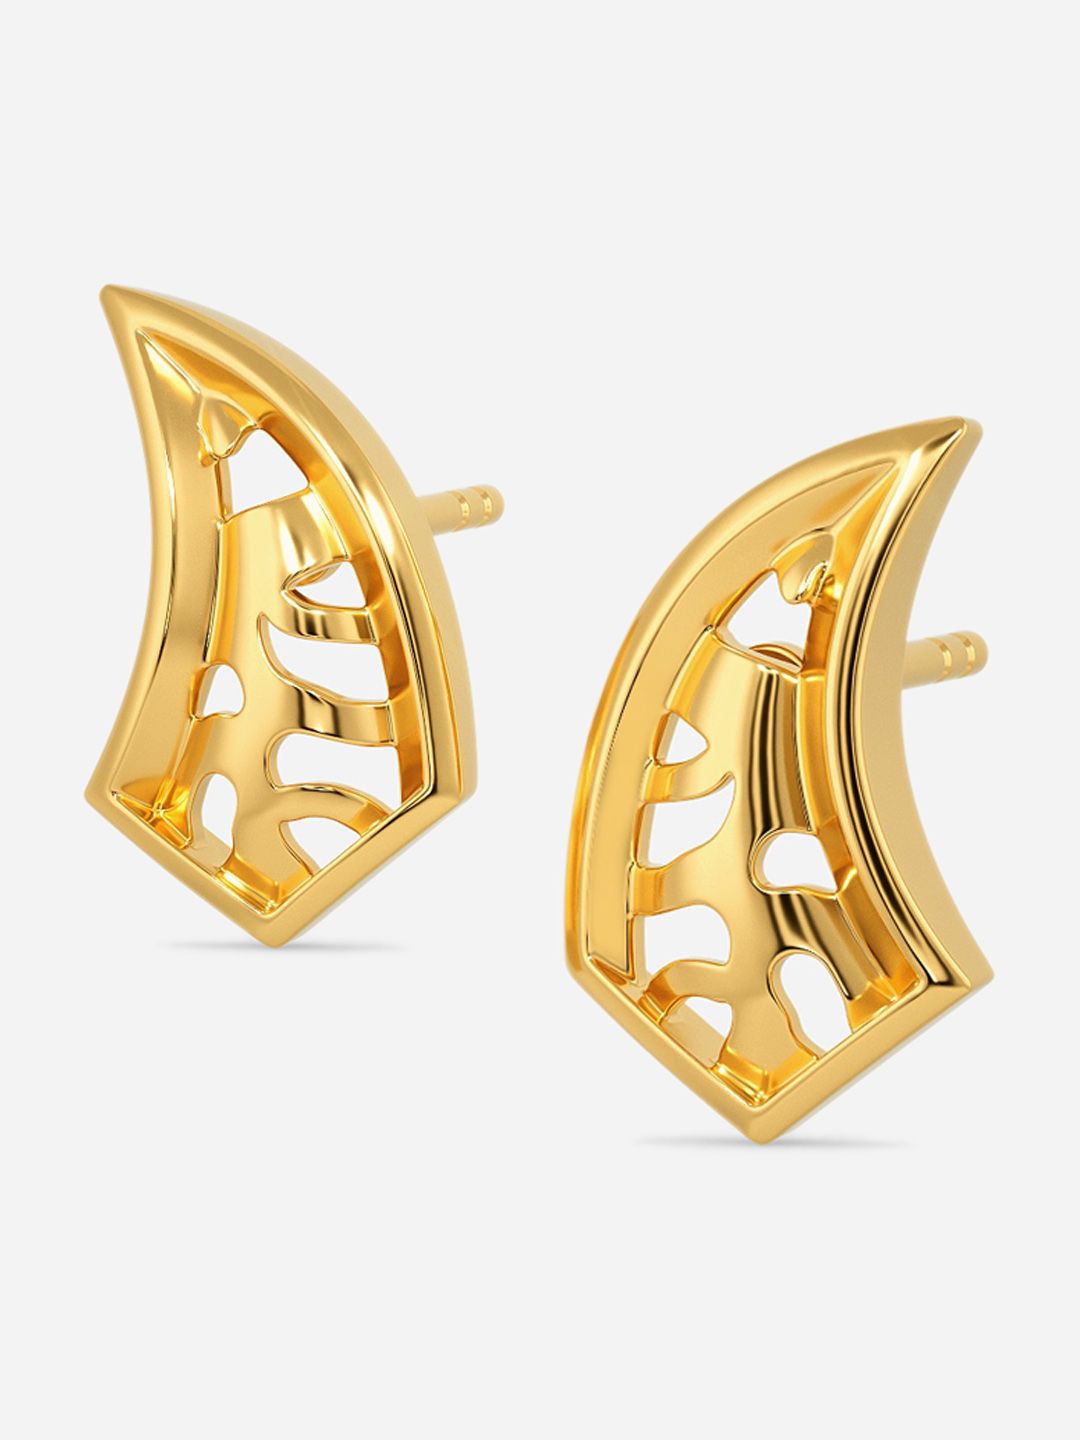 MELORRA Gold  Buy MELORRA 18Kt Swirling Strands Gold Earrings Online   Nykaa Fashion